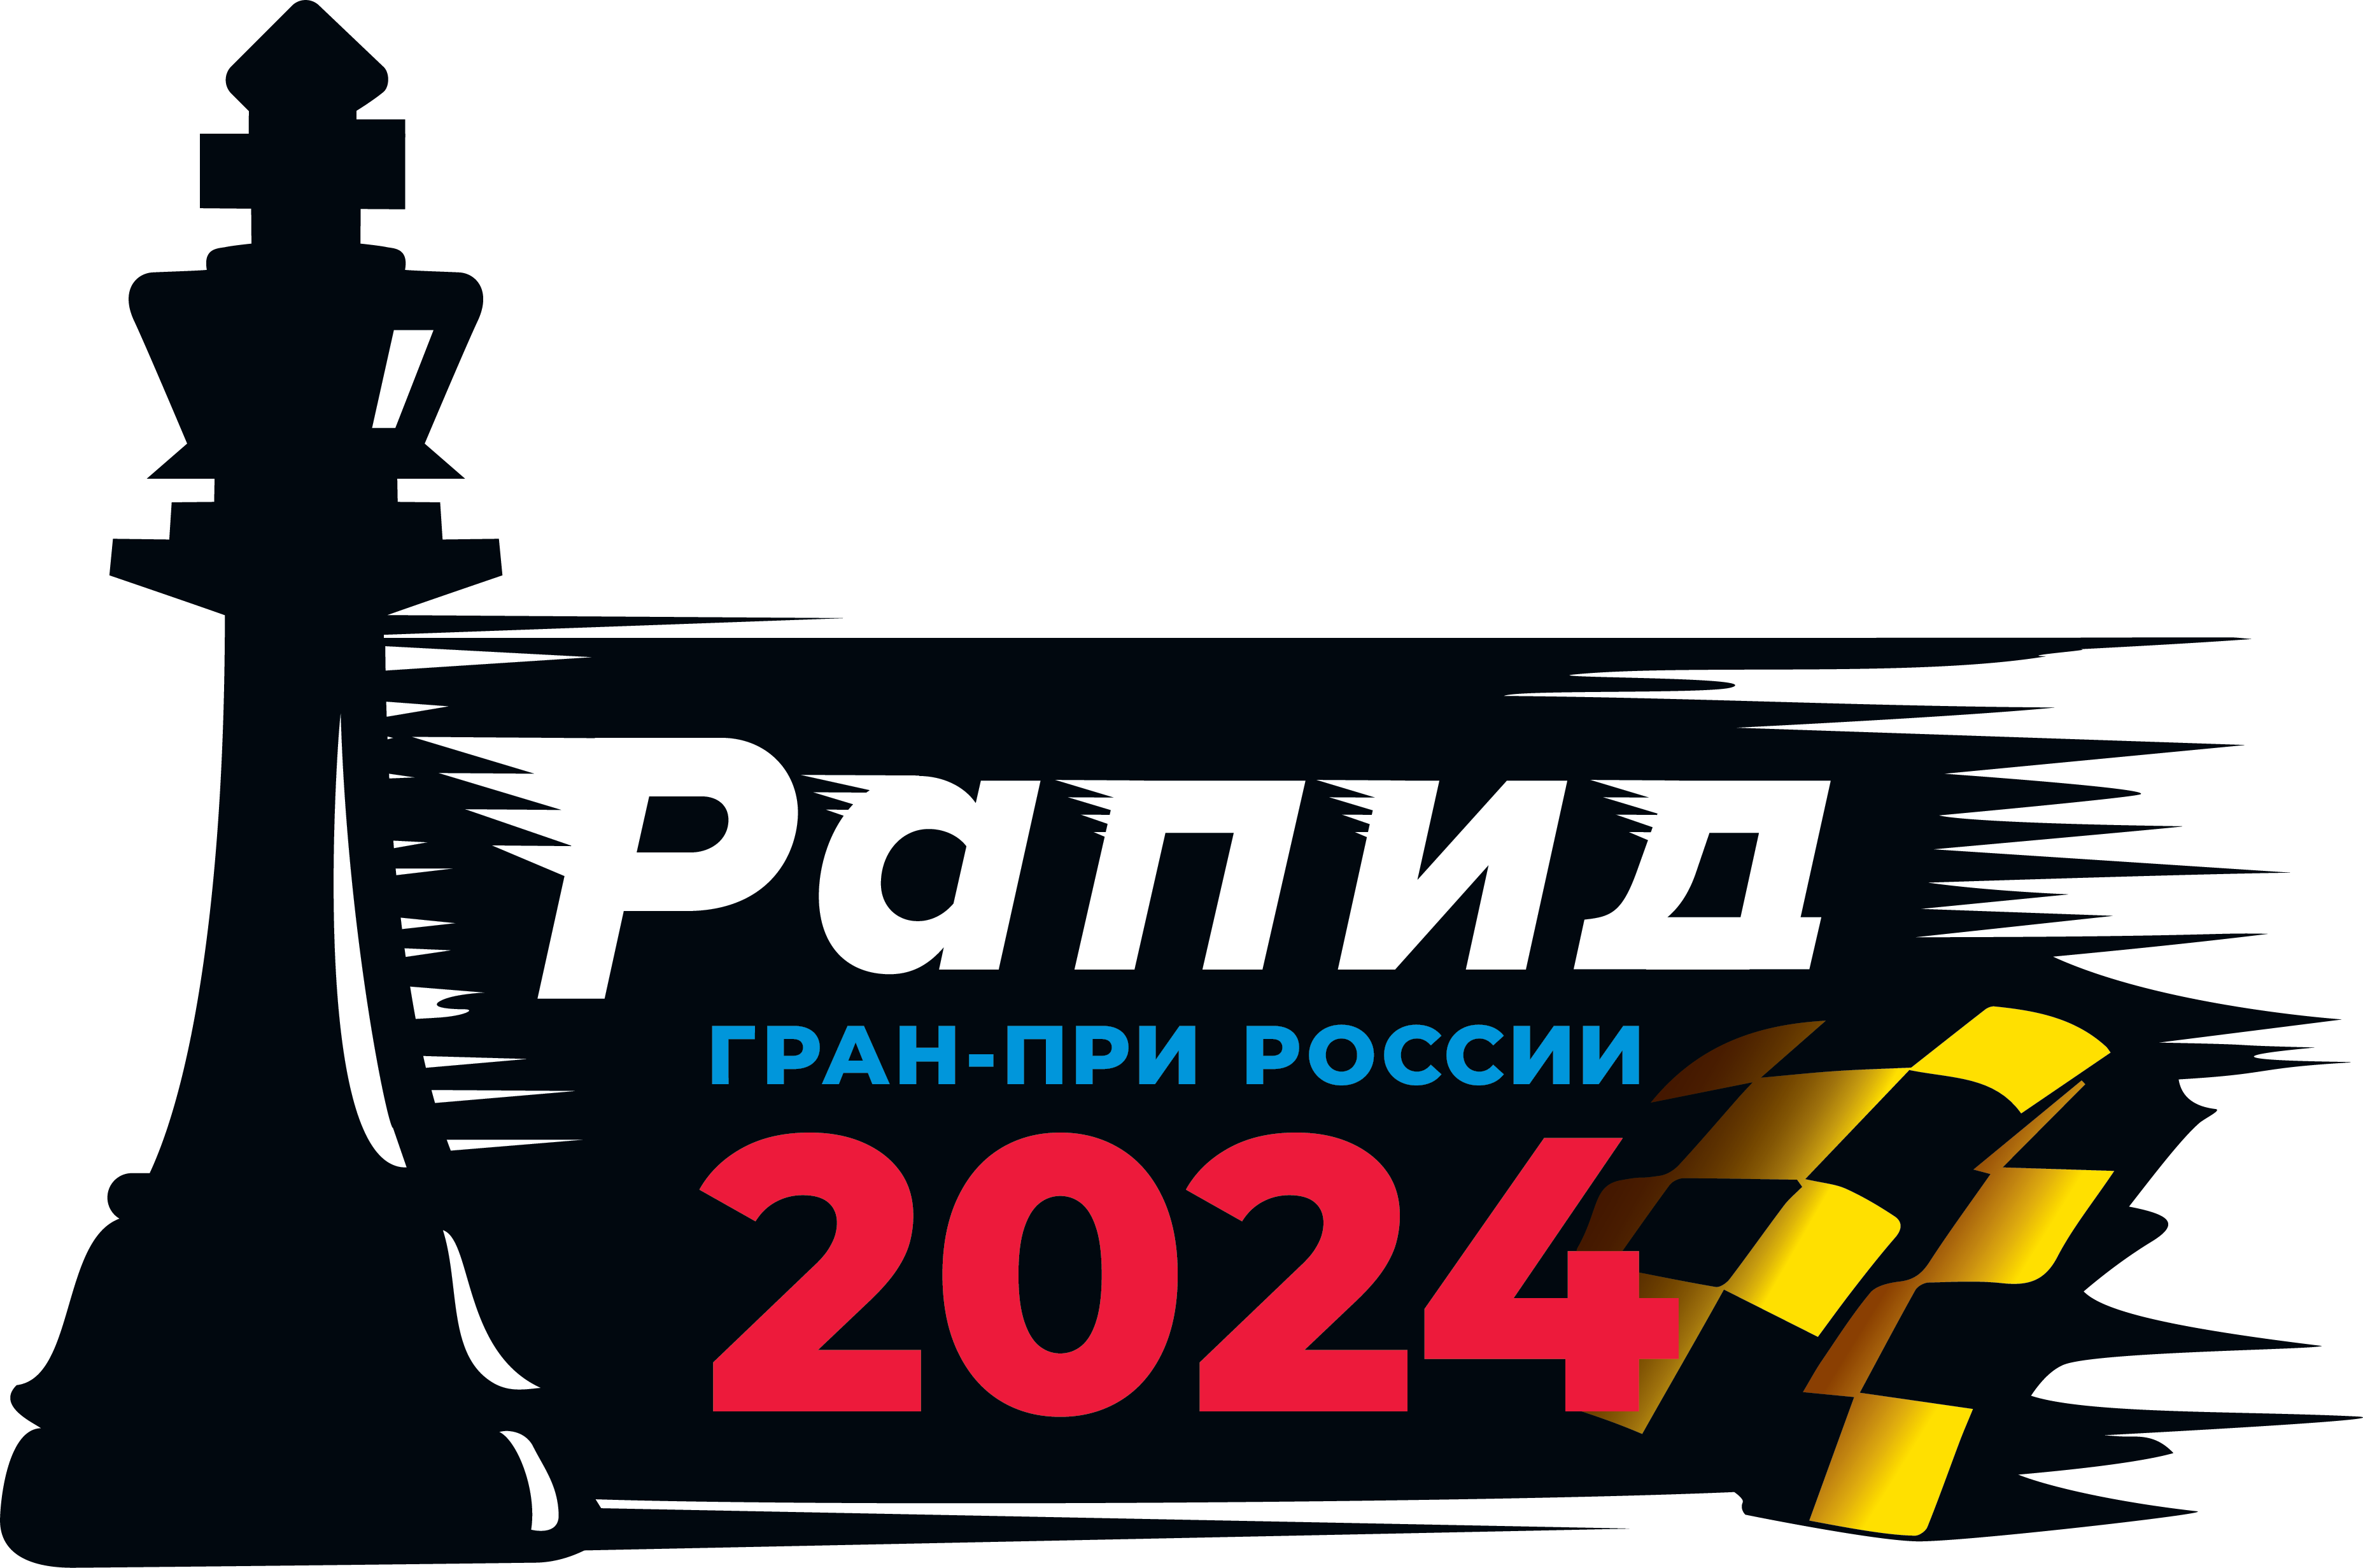 РАПИД Гран-при России 2024 года